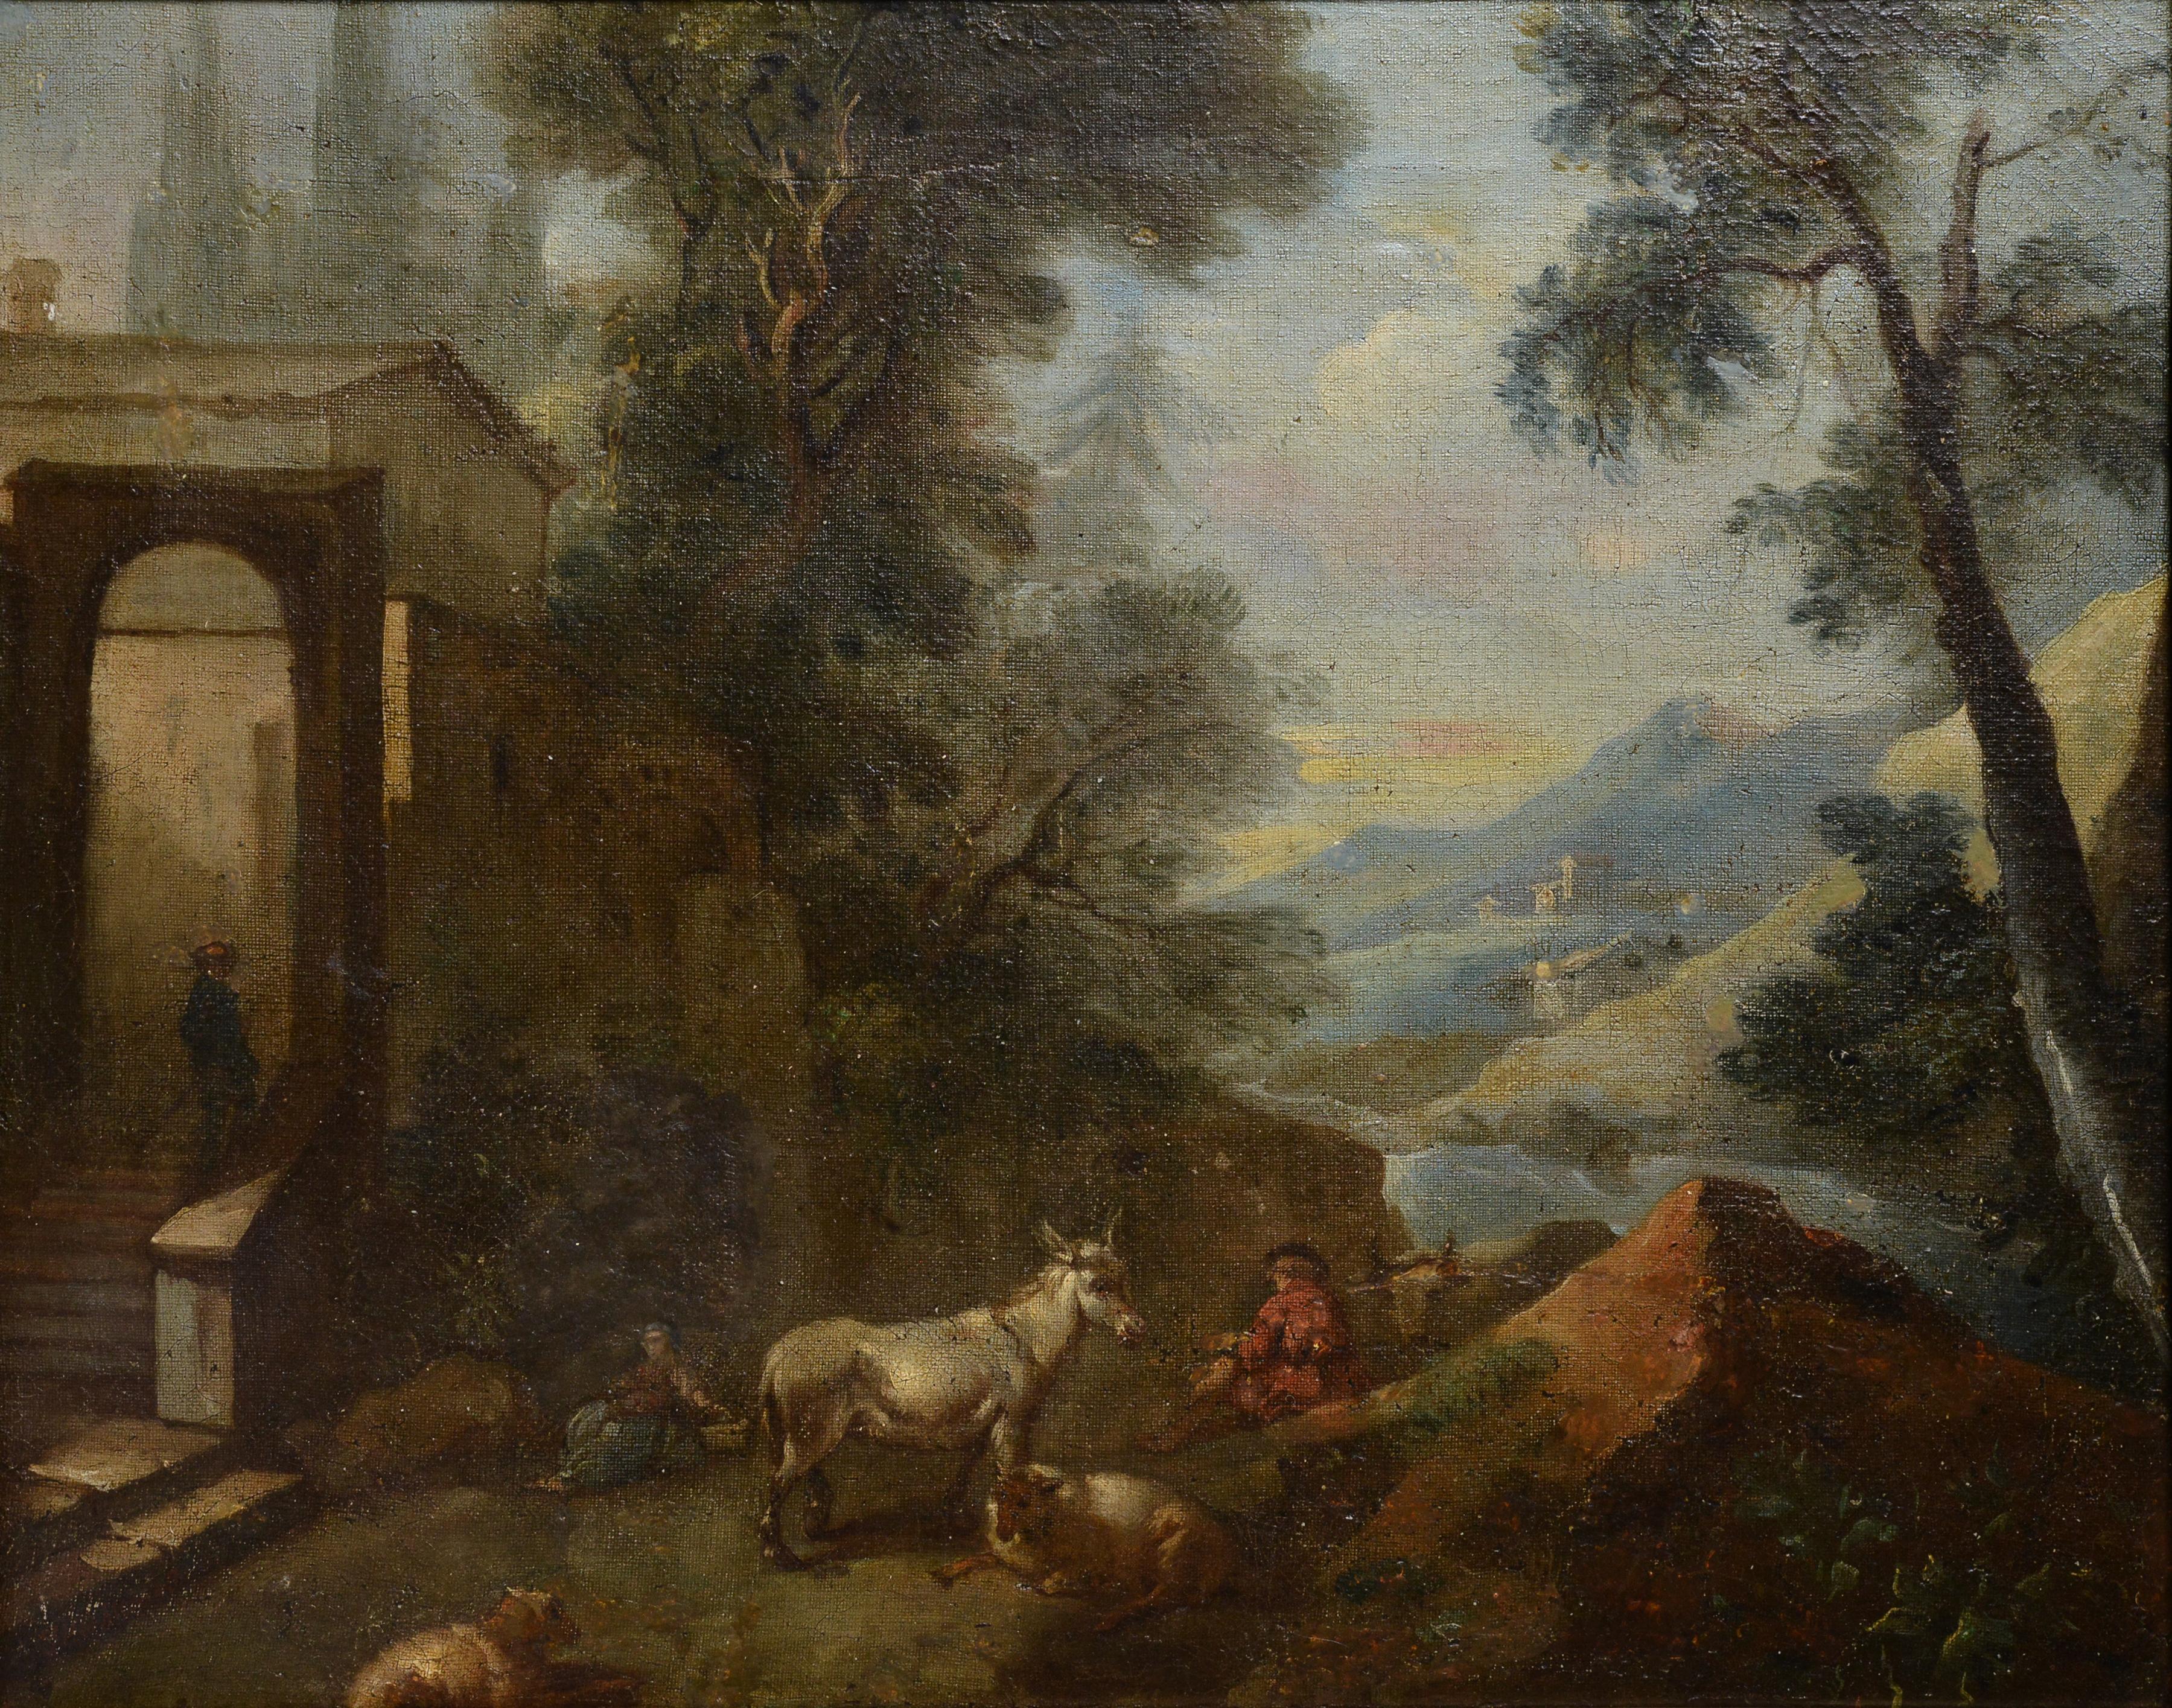 Shepherds Cattle in Capriccio Landschaft, Ölgemälde eines alten Meisters, 17. Jahrhunderts  – Painting von Jan Van der Meer 